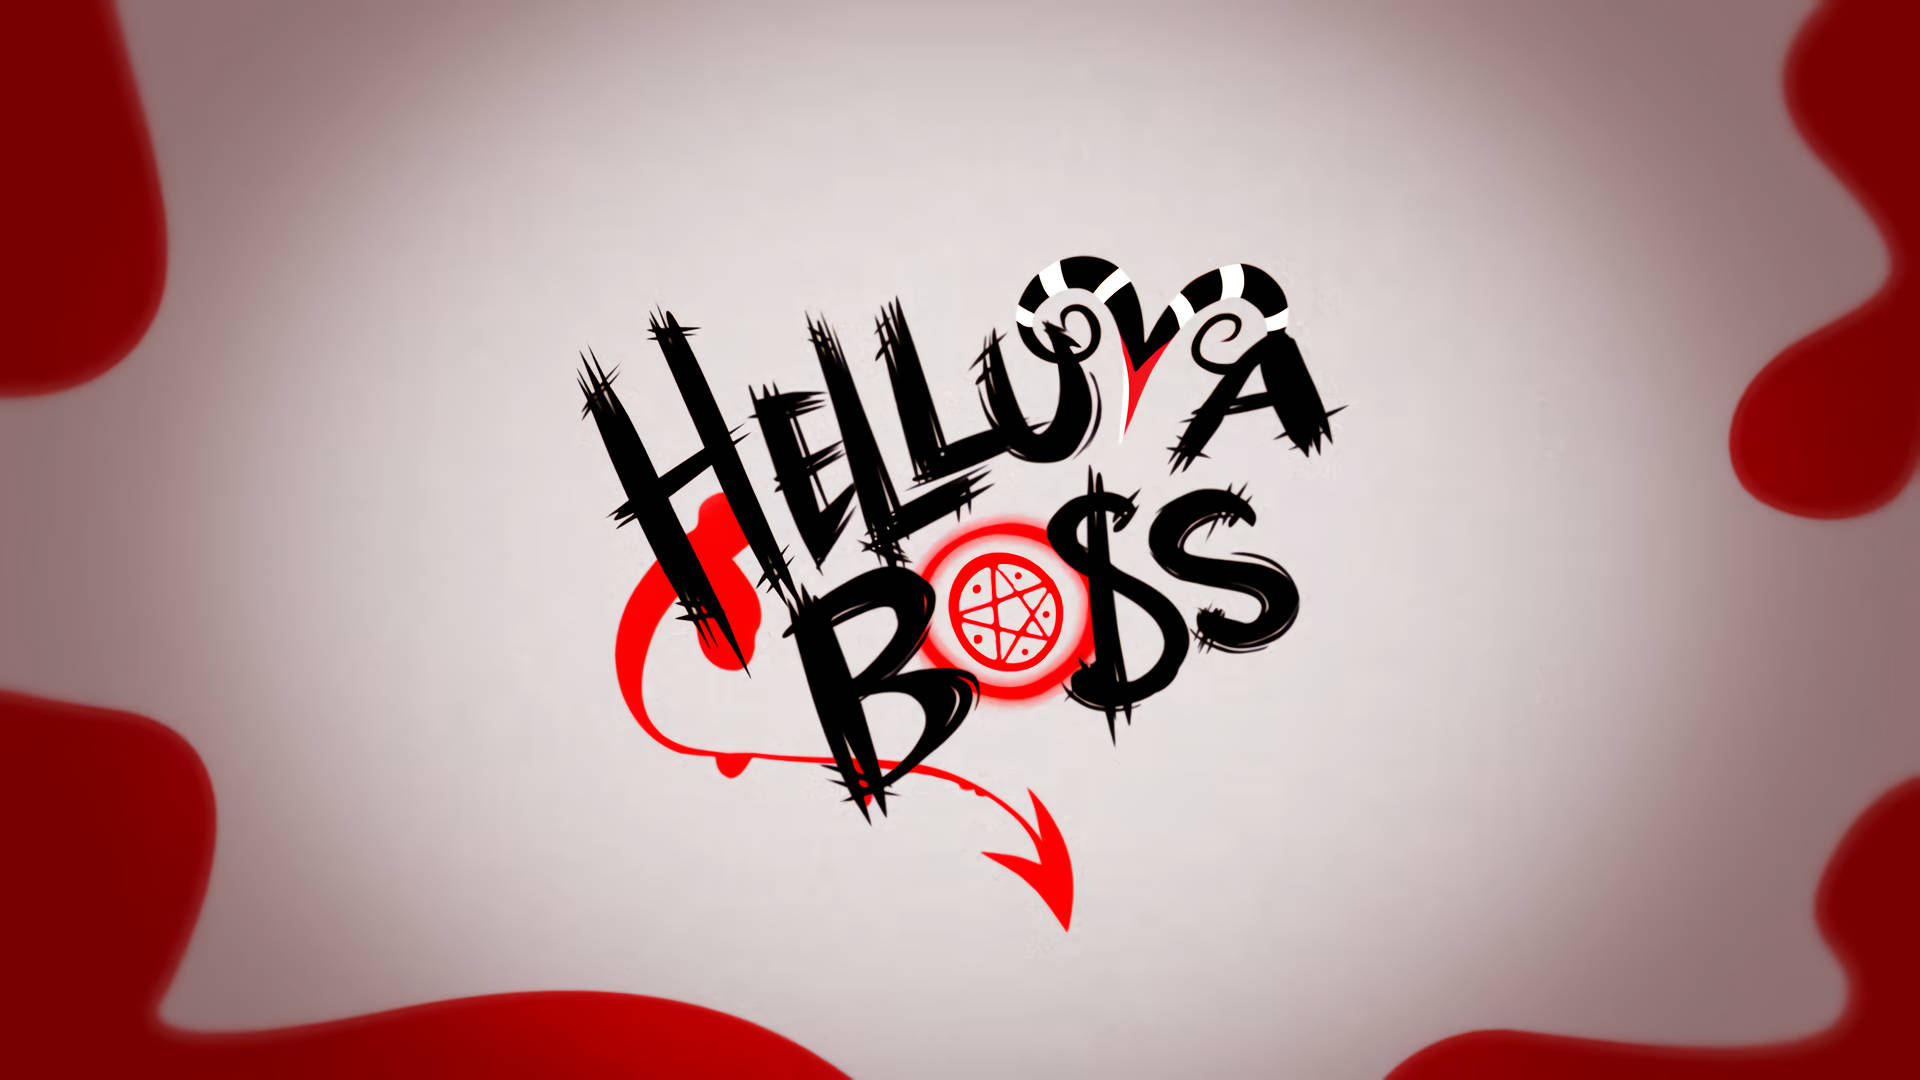 Helluva Boss Funky Logo Wallpaper